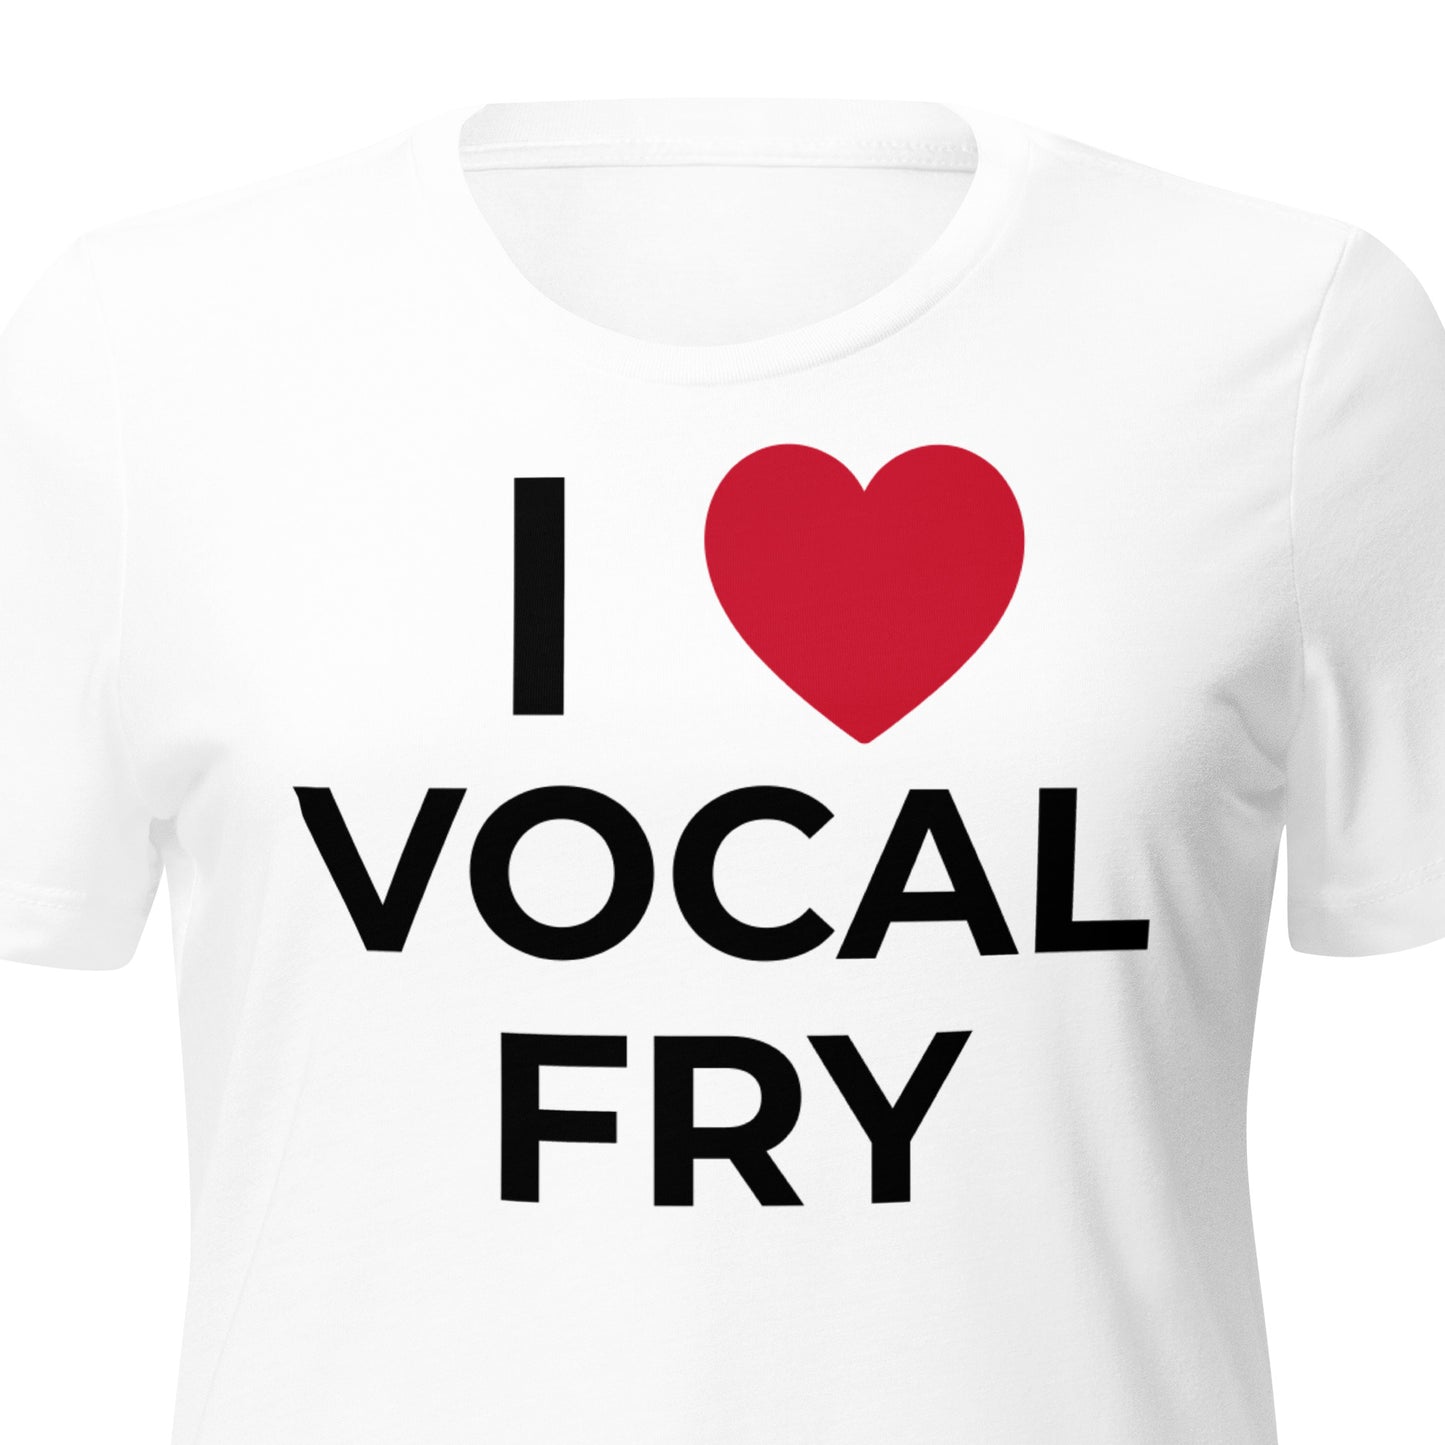 Vocal Fry t-shirt